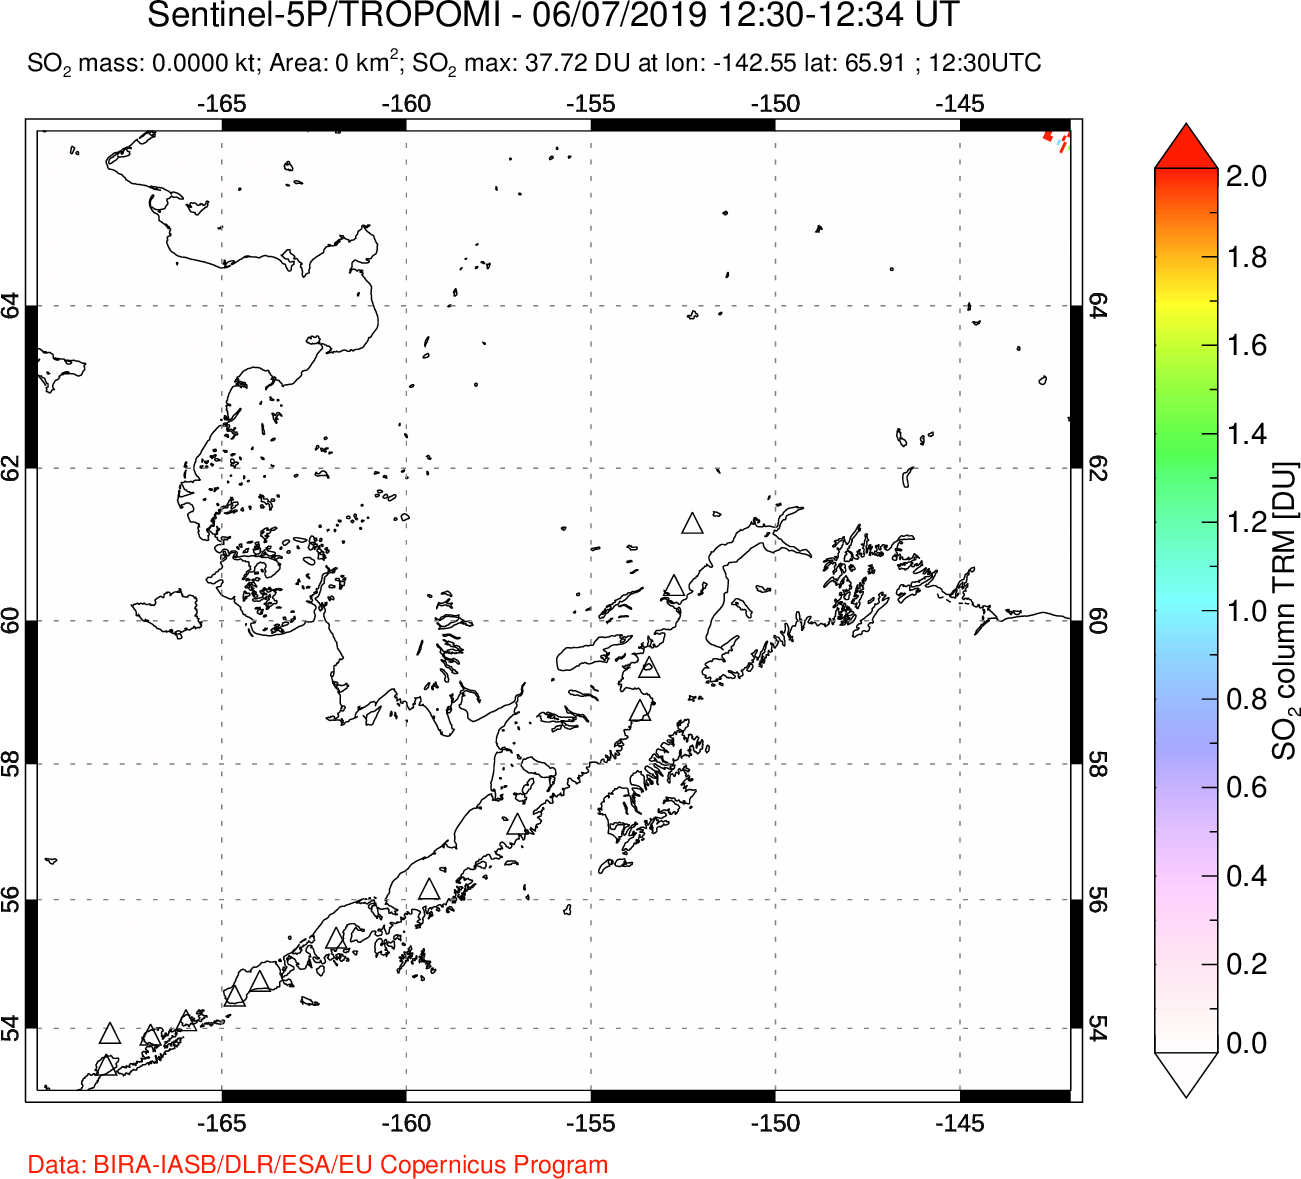 A sulfur dioxide image over Alaska, USA on Jun 07, 2019.